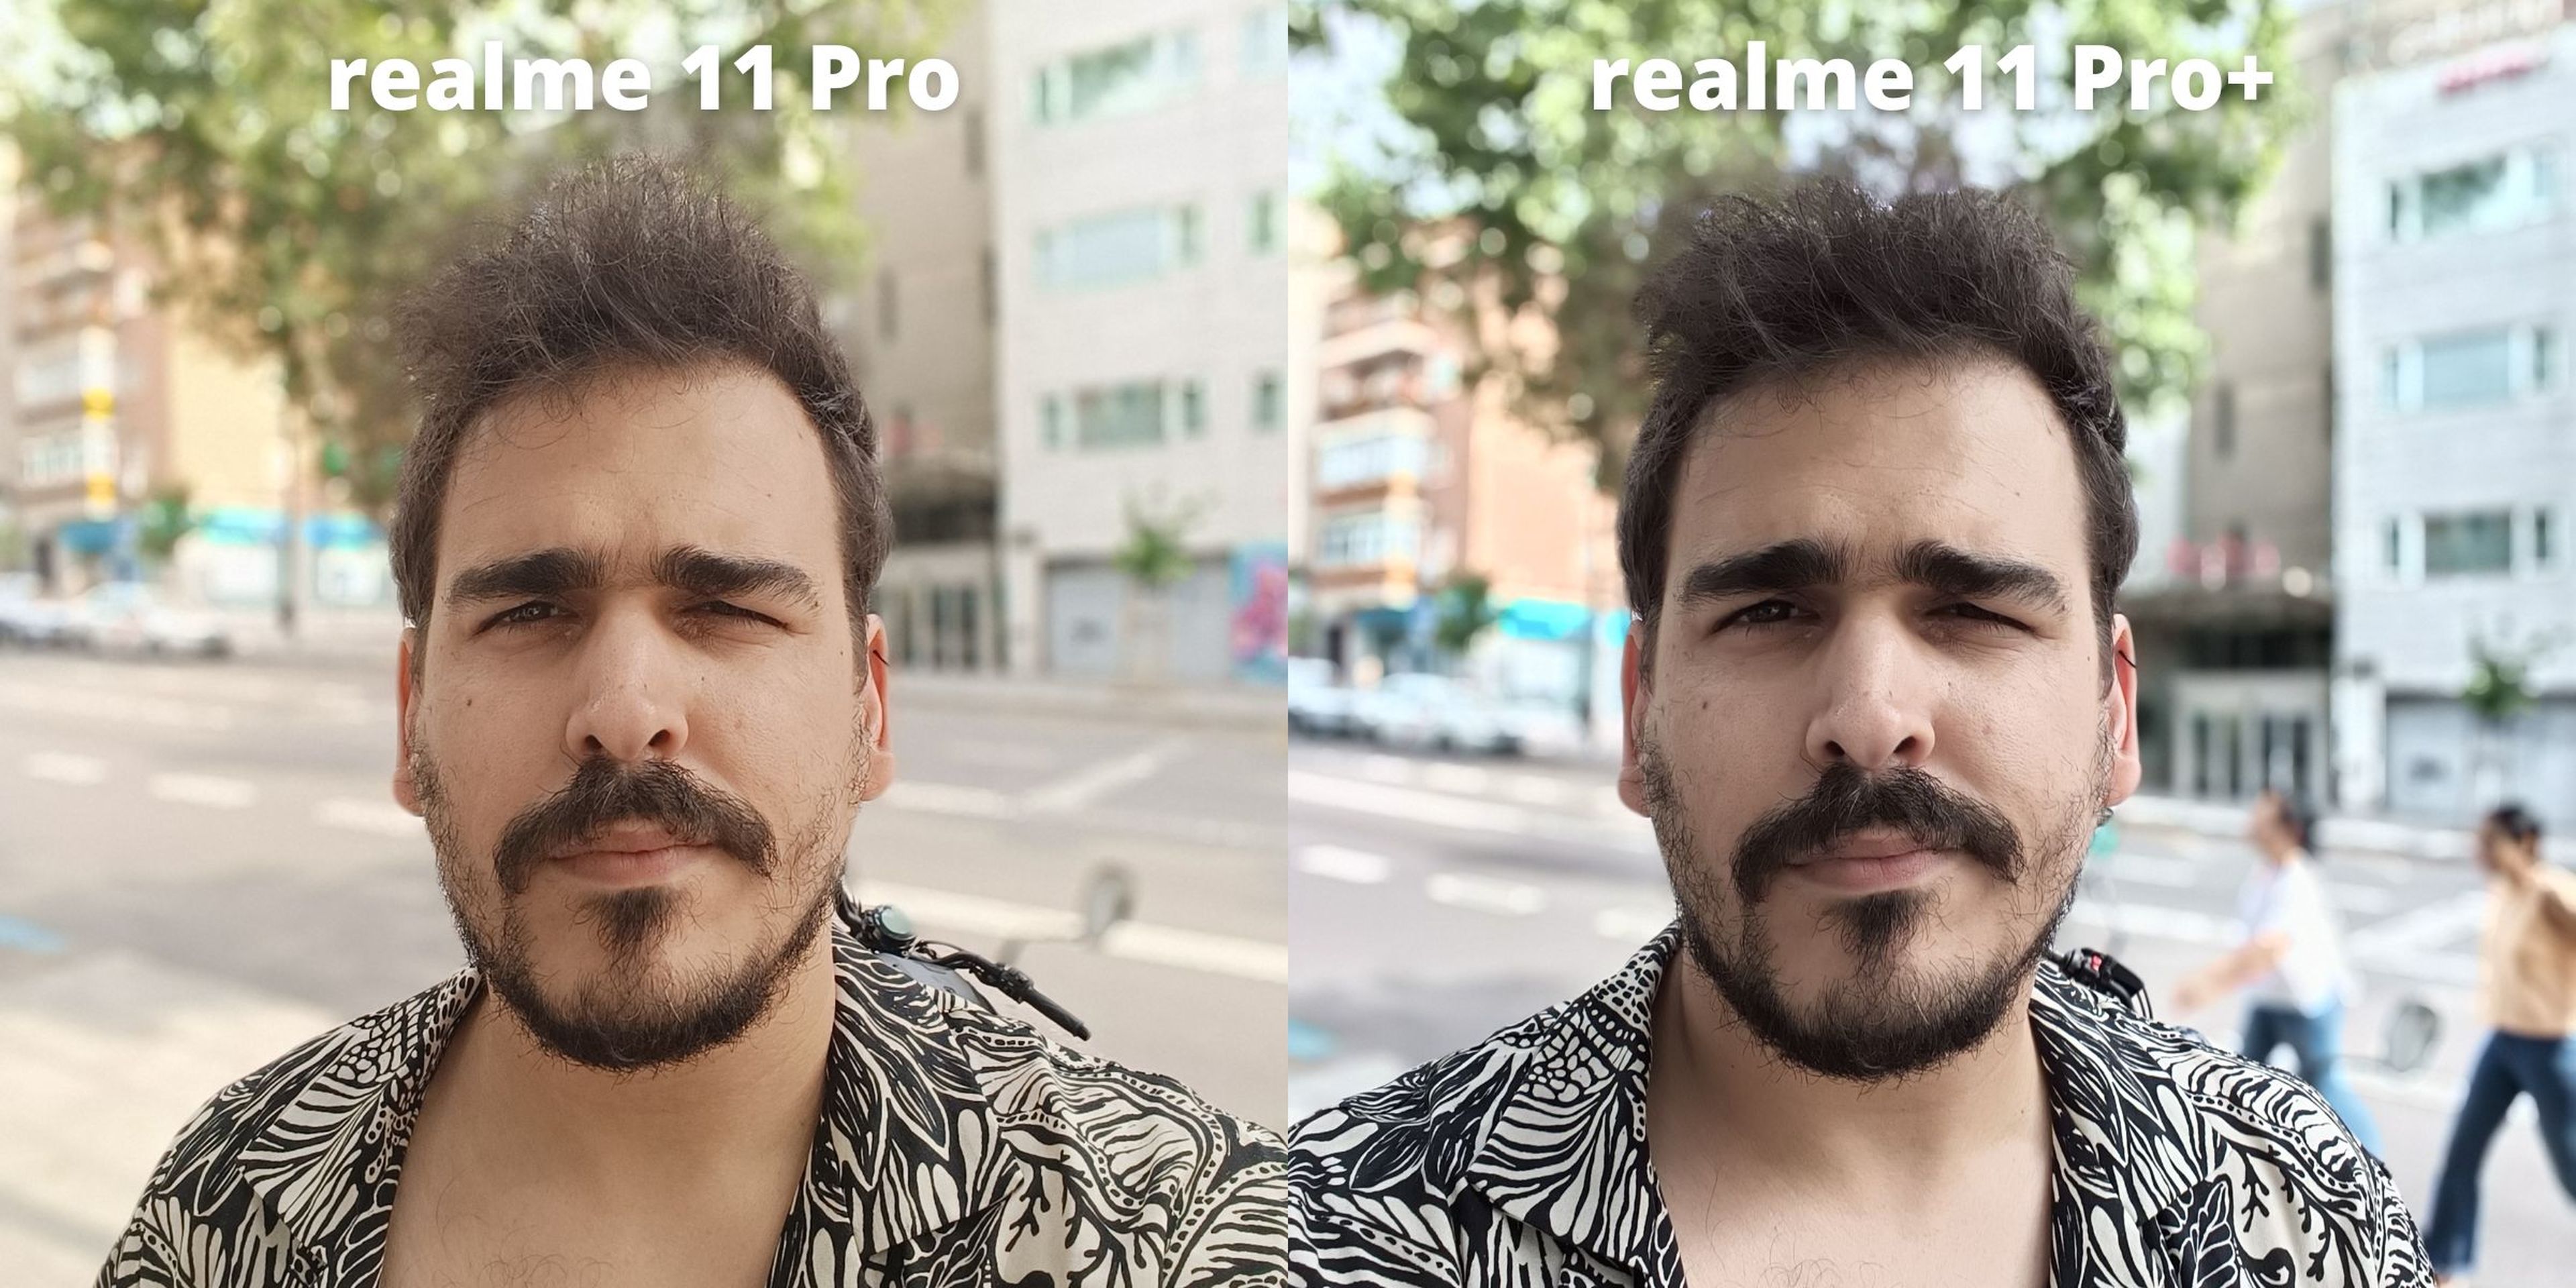 Realme 11 Pro vs realme 11 Pro+